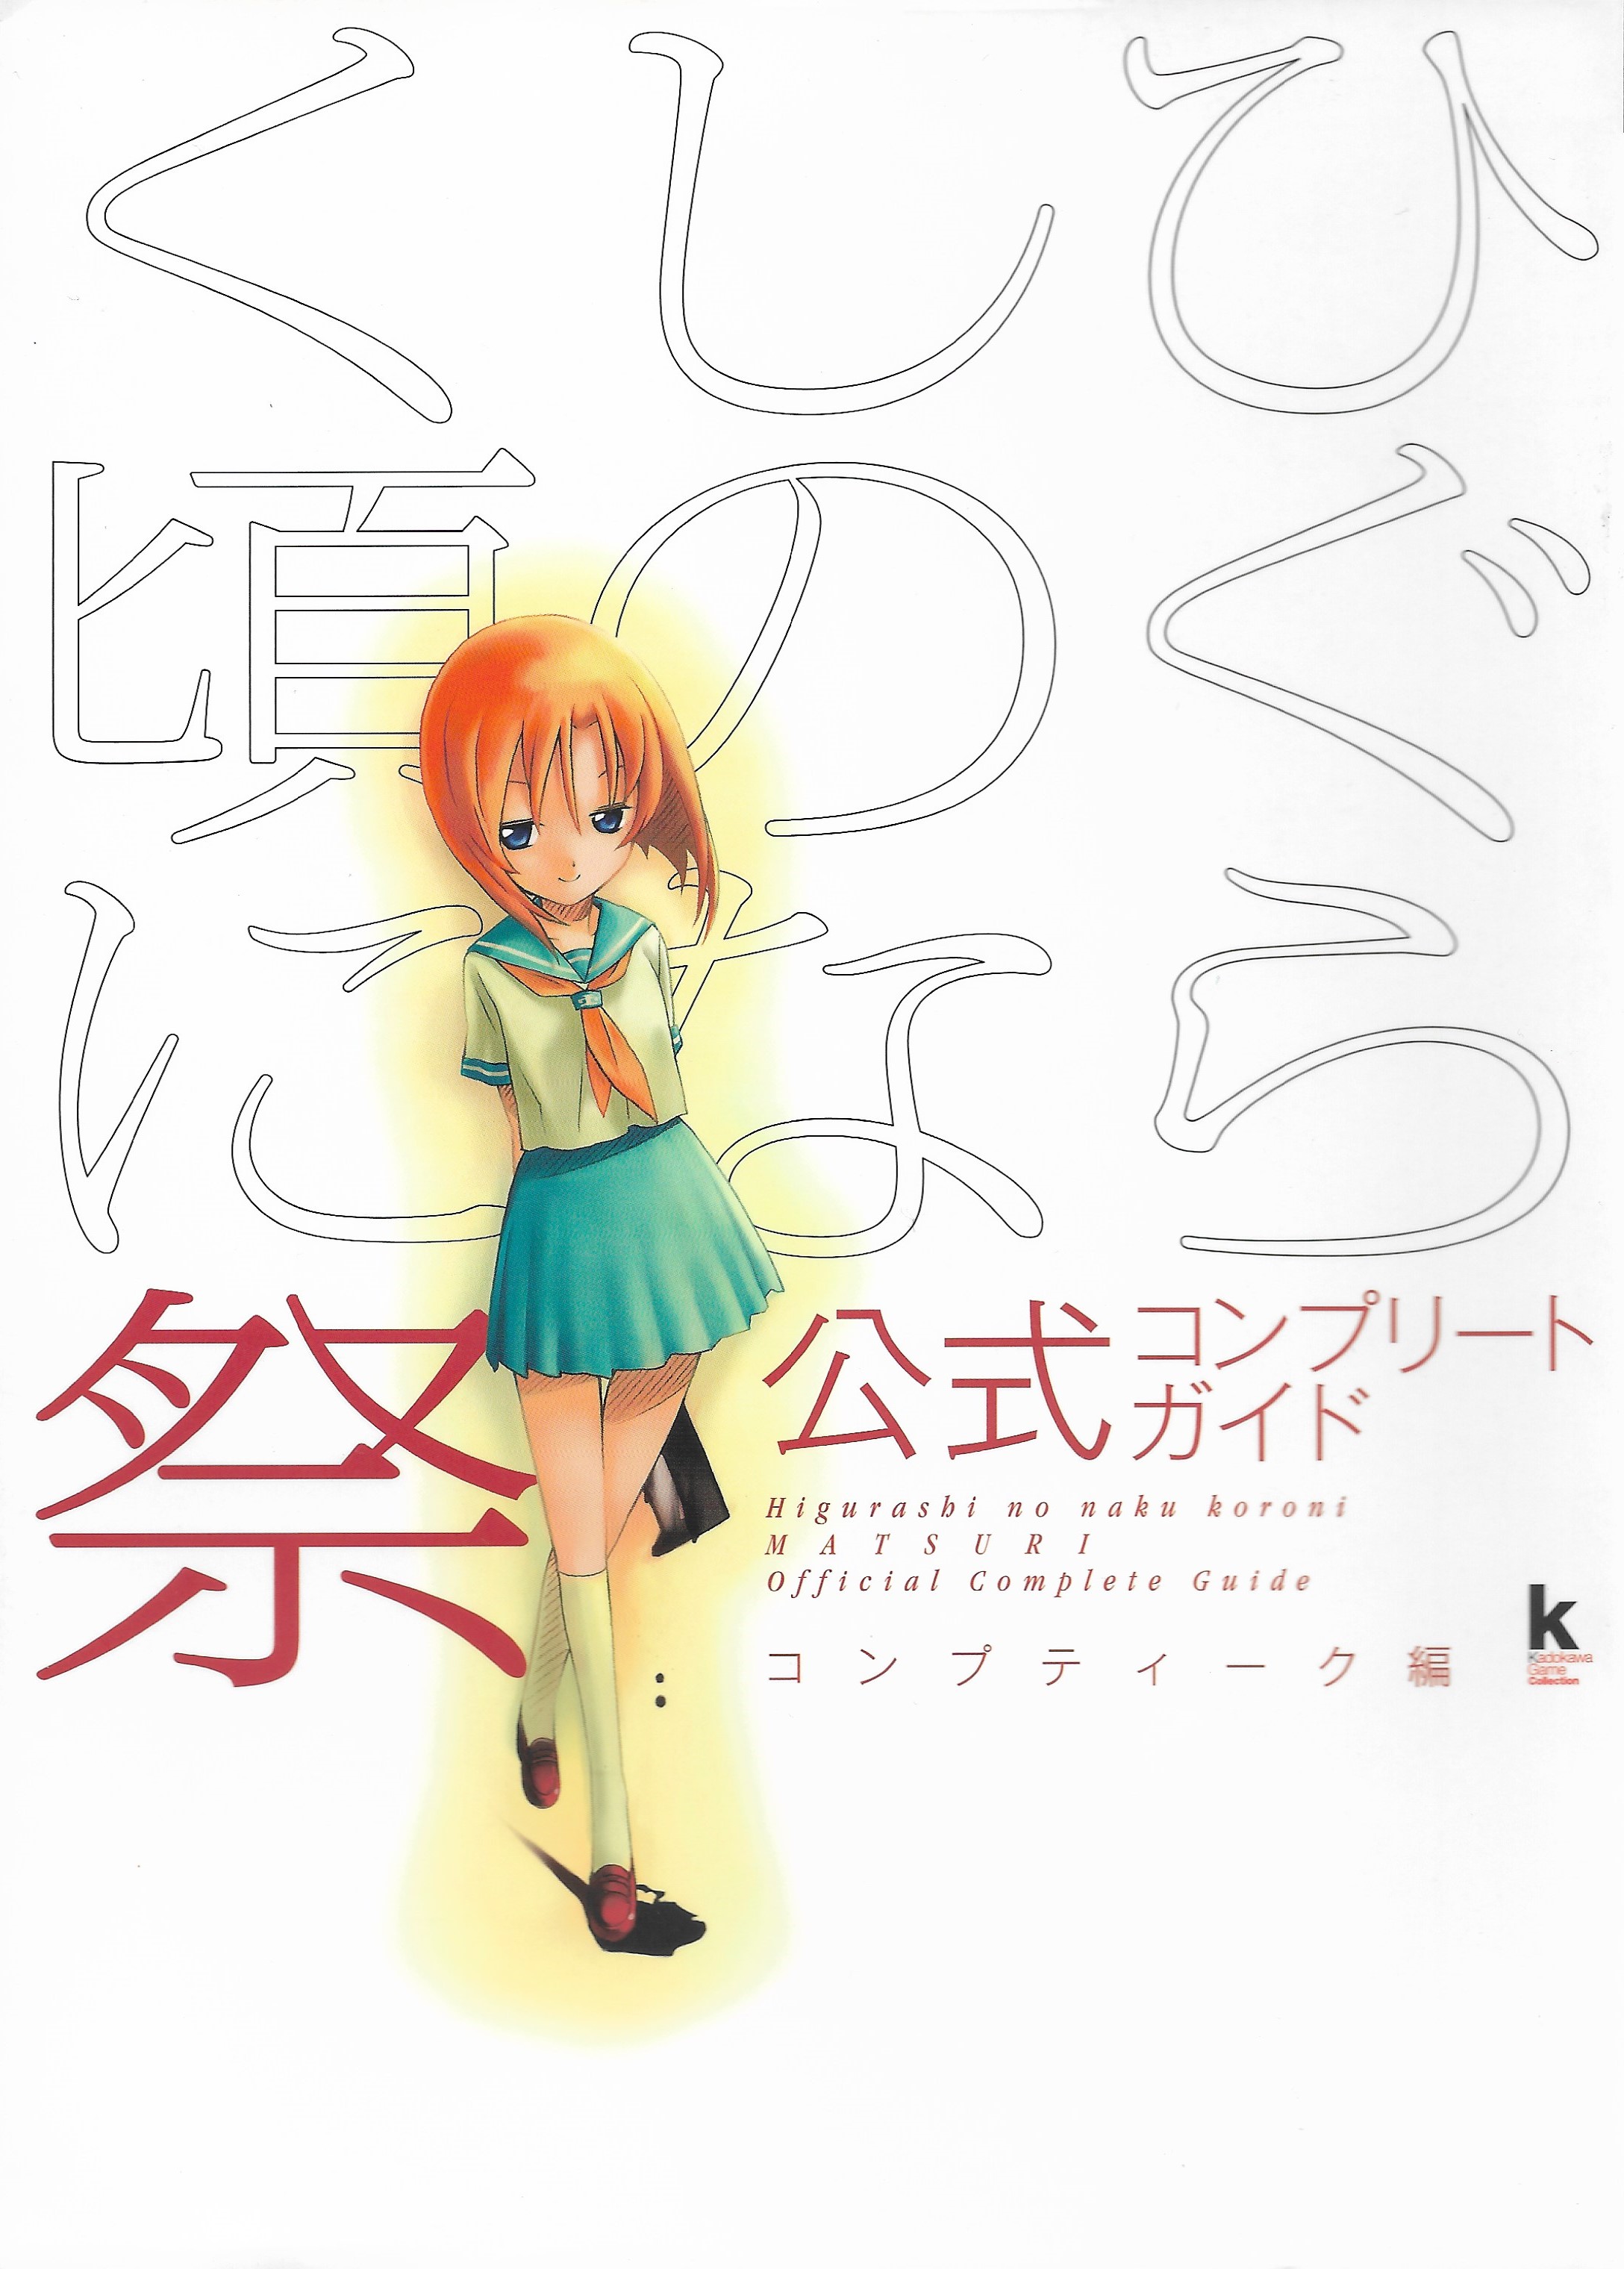 A Higurashi No Naku Koro Ni Gou/Sotsu Art/Interview Book will be